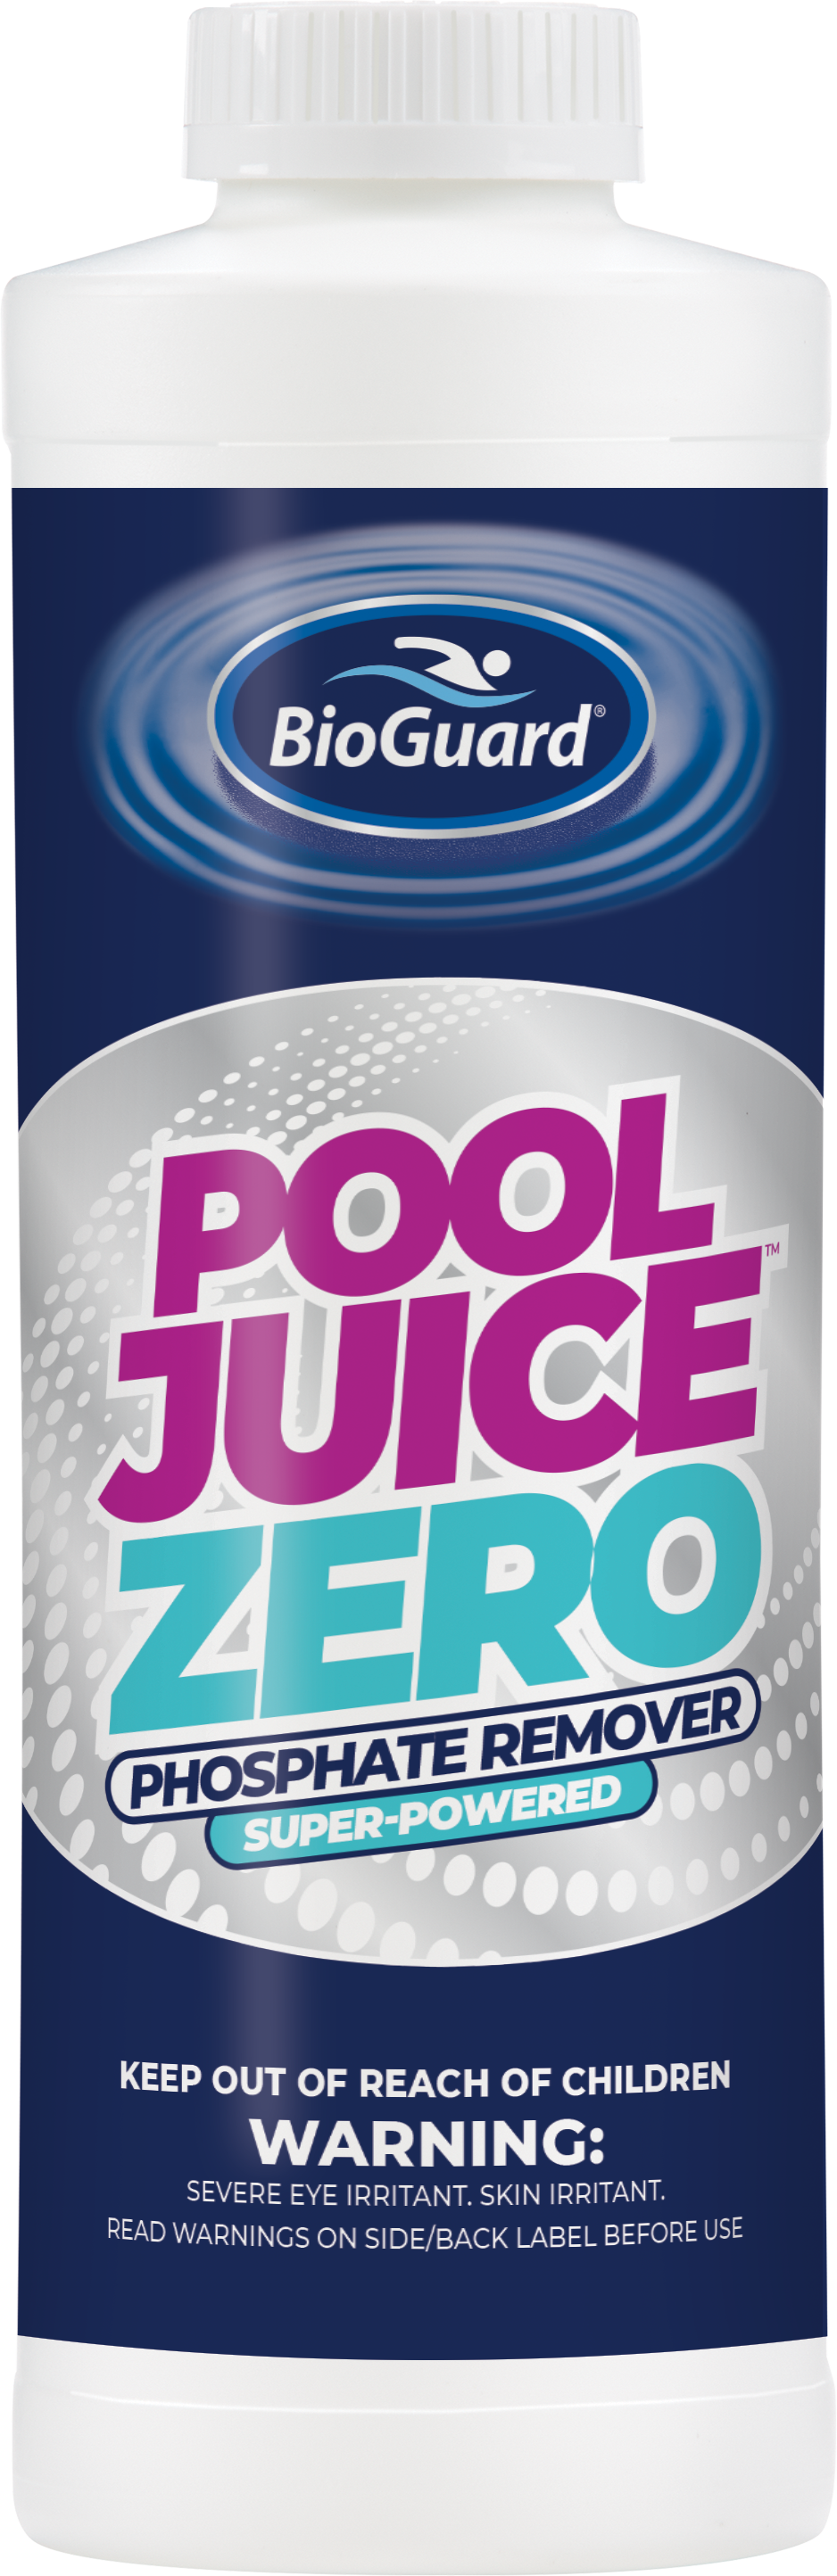 BioGuard Pool Juice Zero phosphate remover